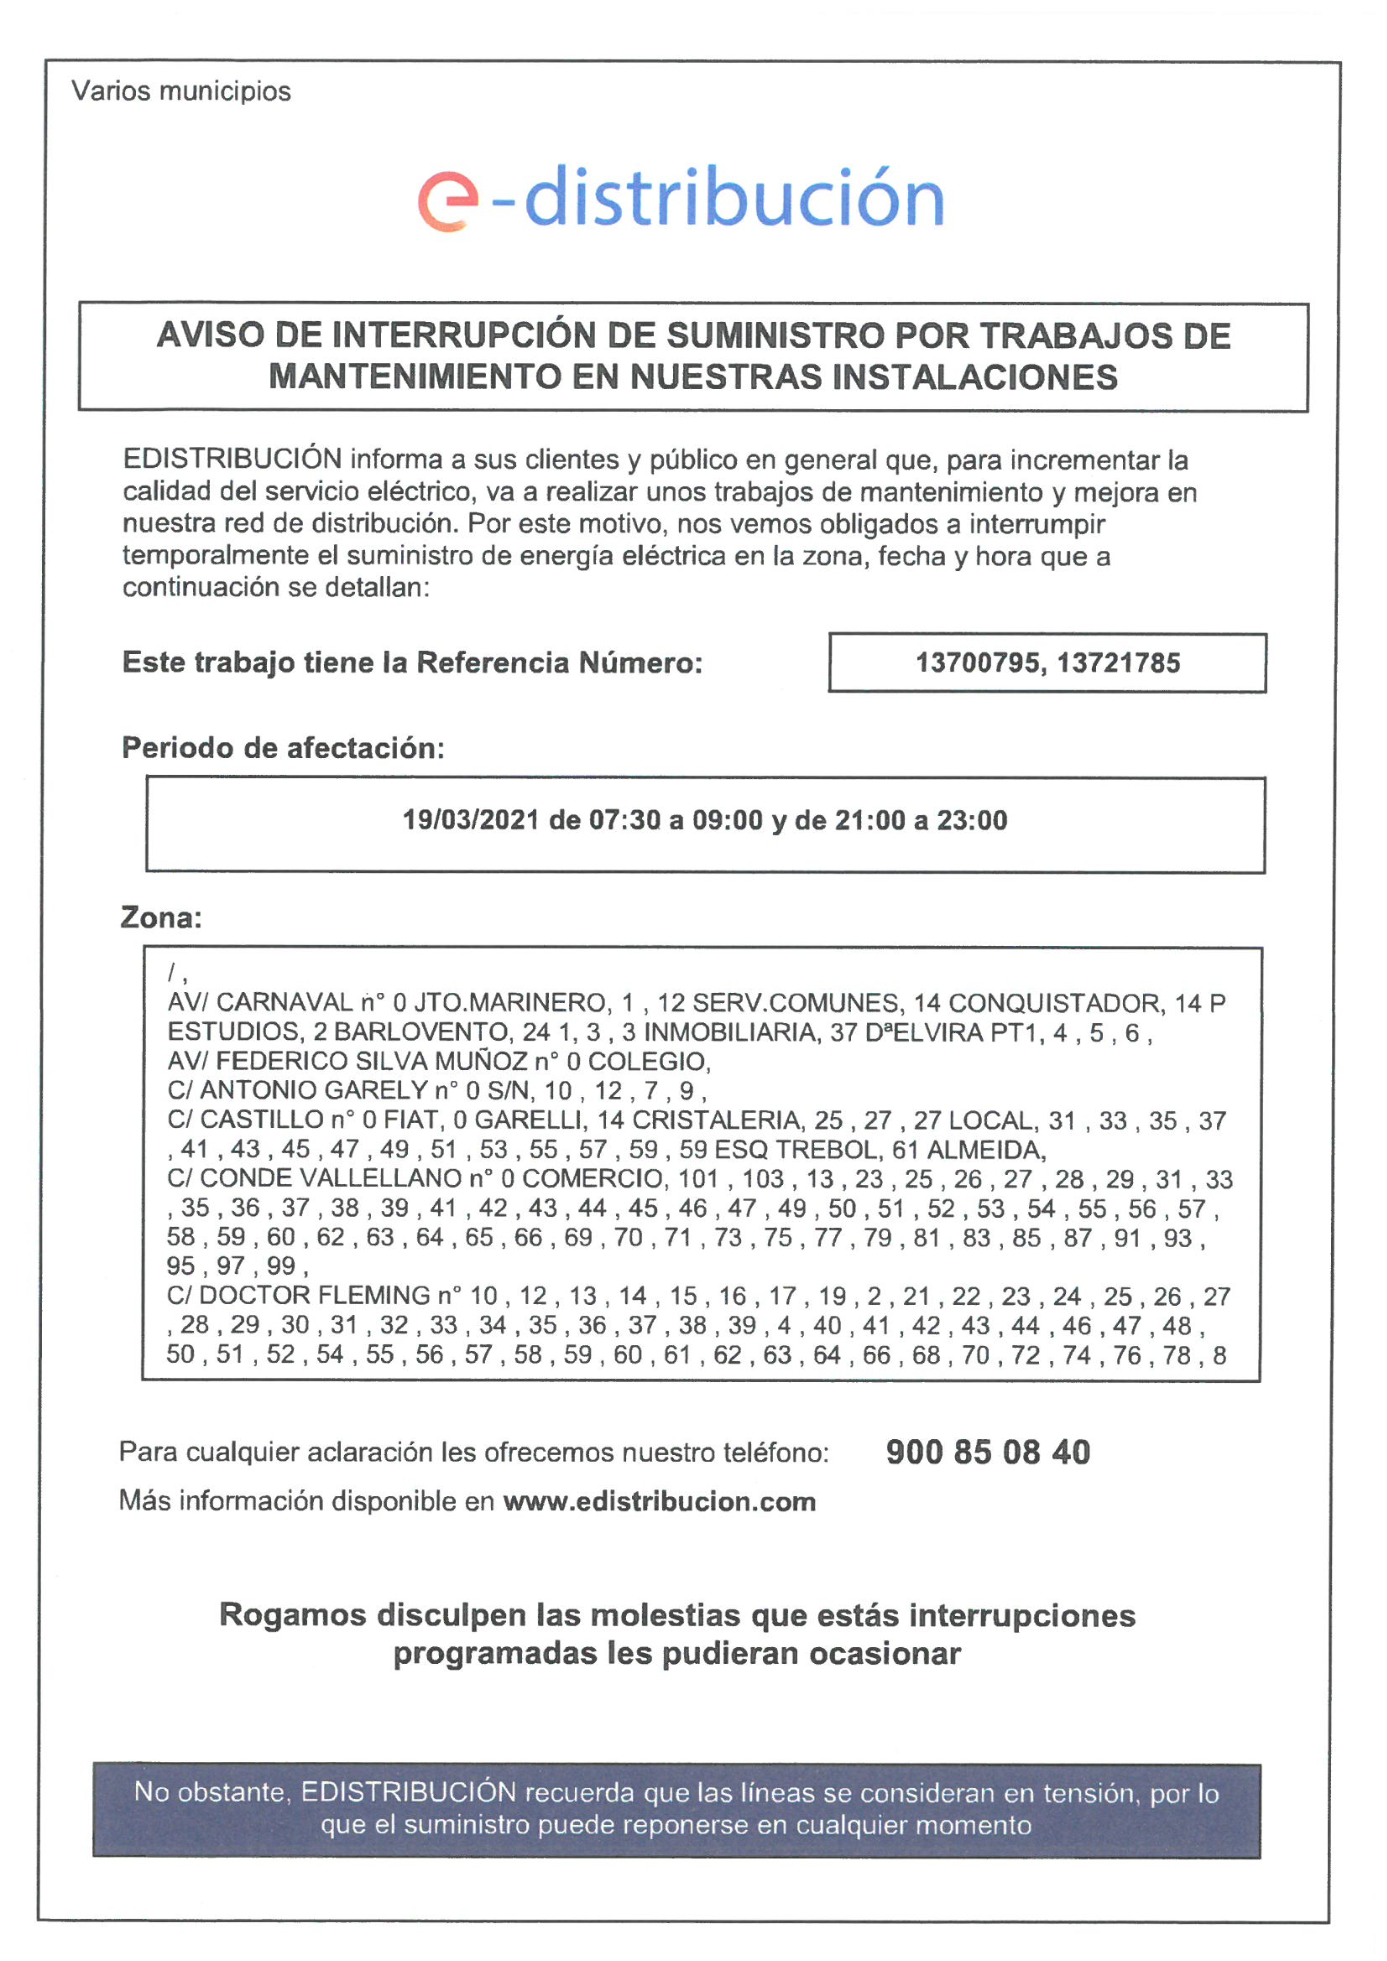 Aviso de interrupción de suministro en Isla Cristina por trabajos de mantenimiento